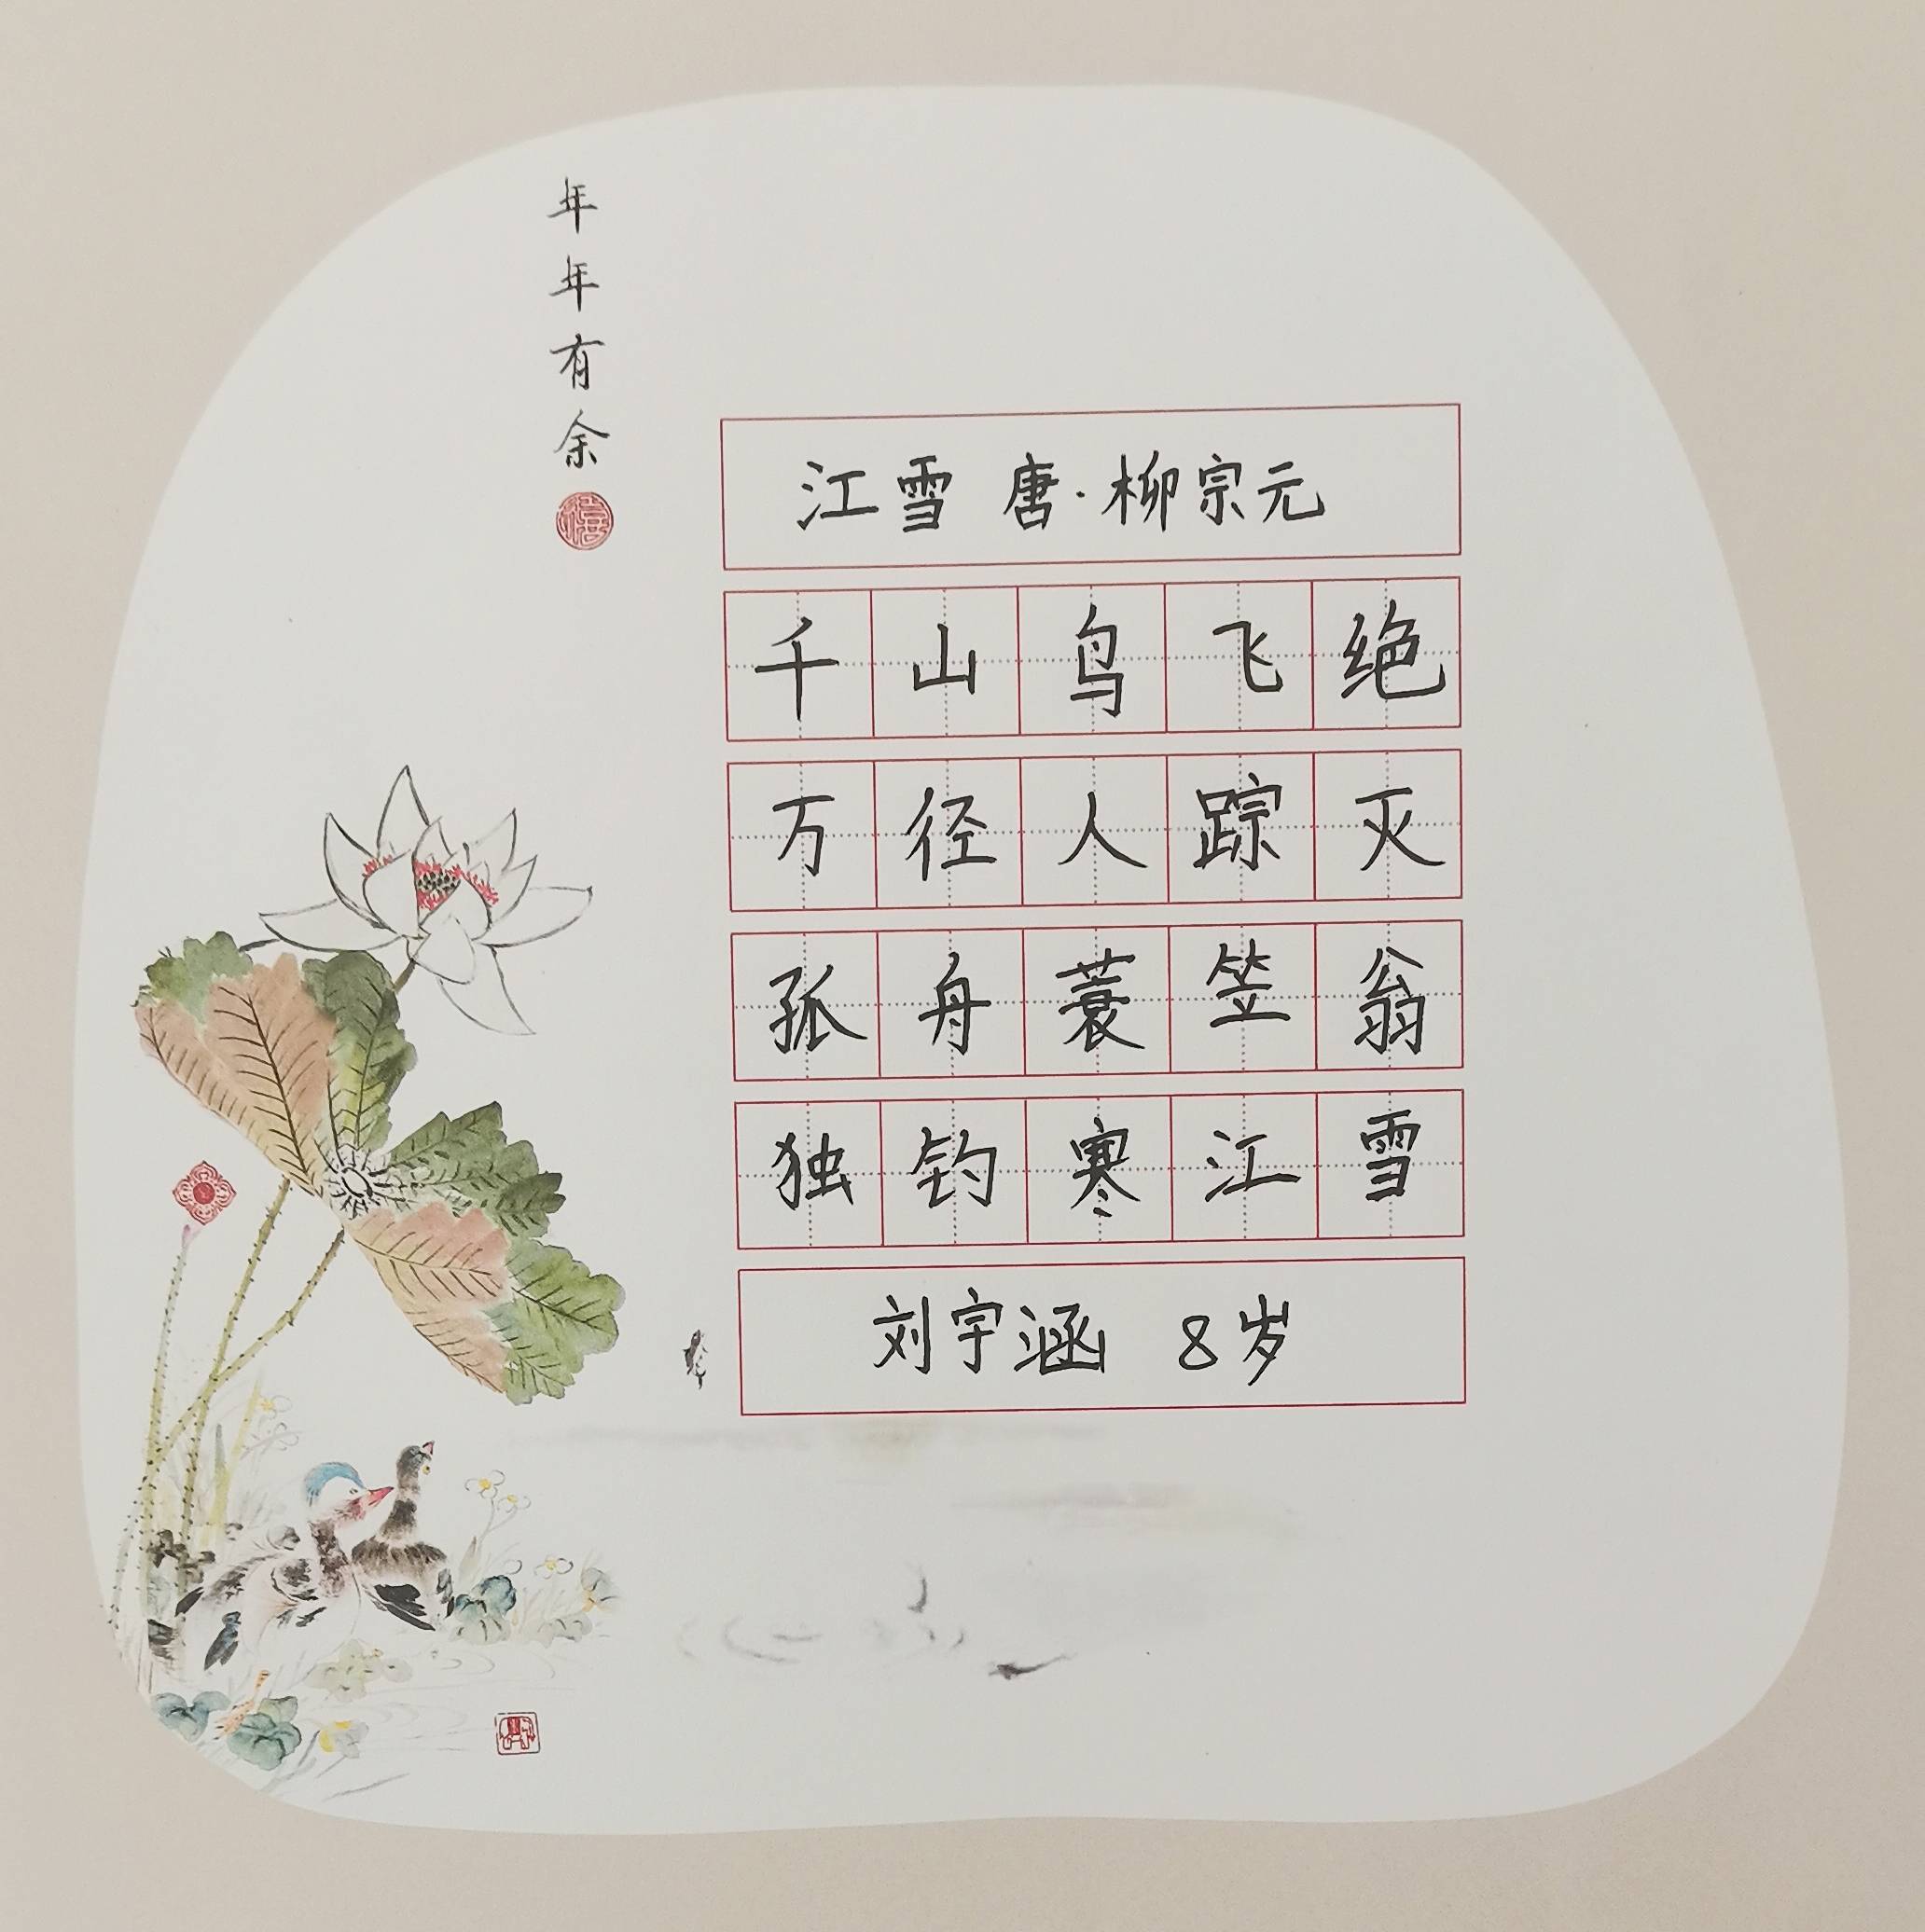 (17)作者:姓名:张语歌,性别:女,年龄,10岁,硬笔书法,陕西省安康市